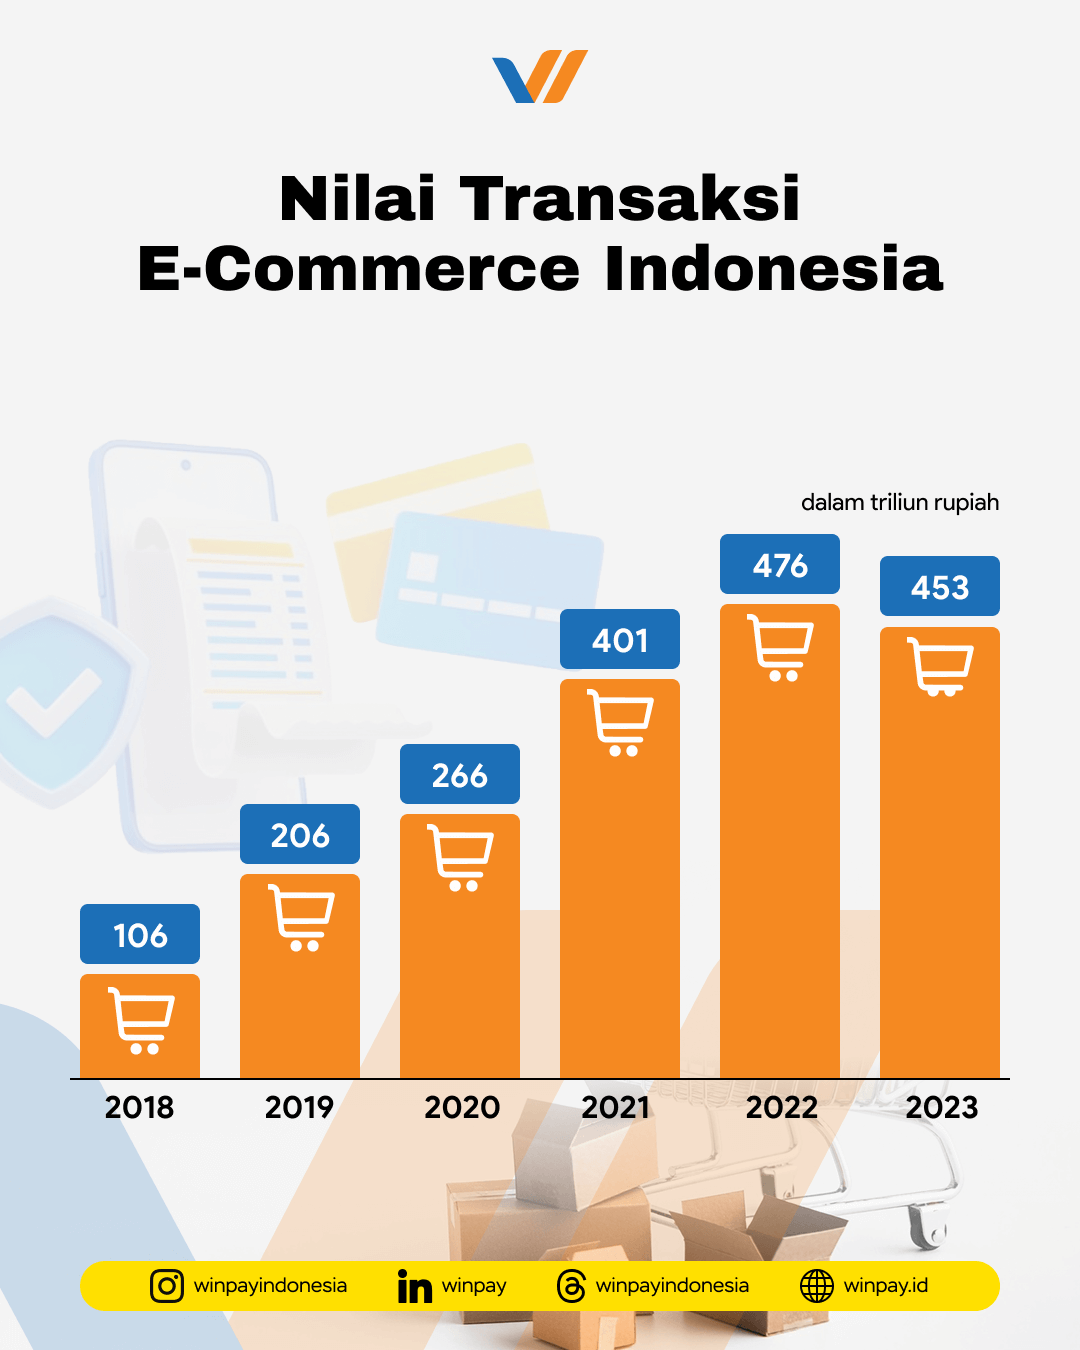 Nilai transaksi e-commerce Indonesia